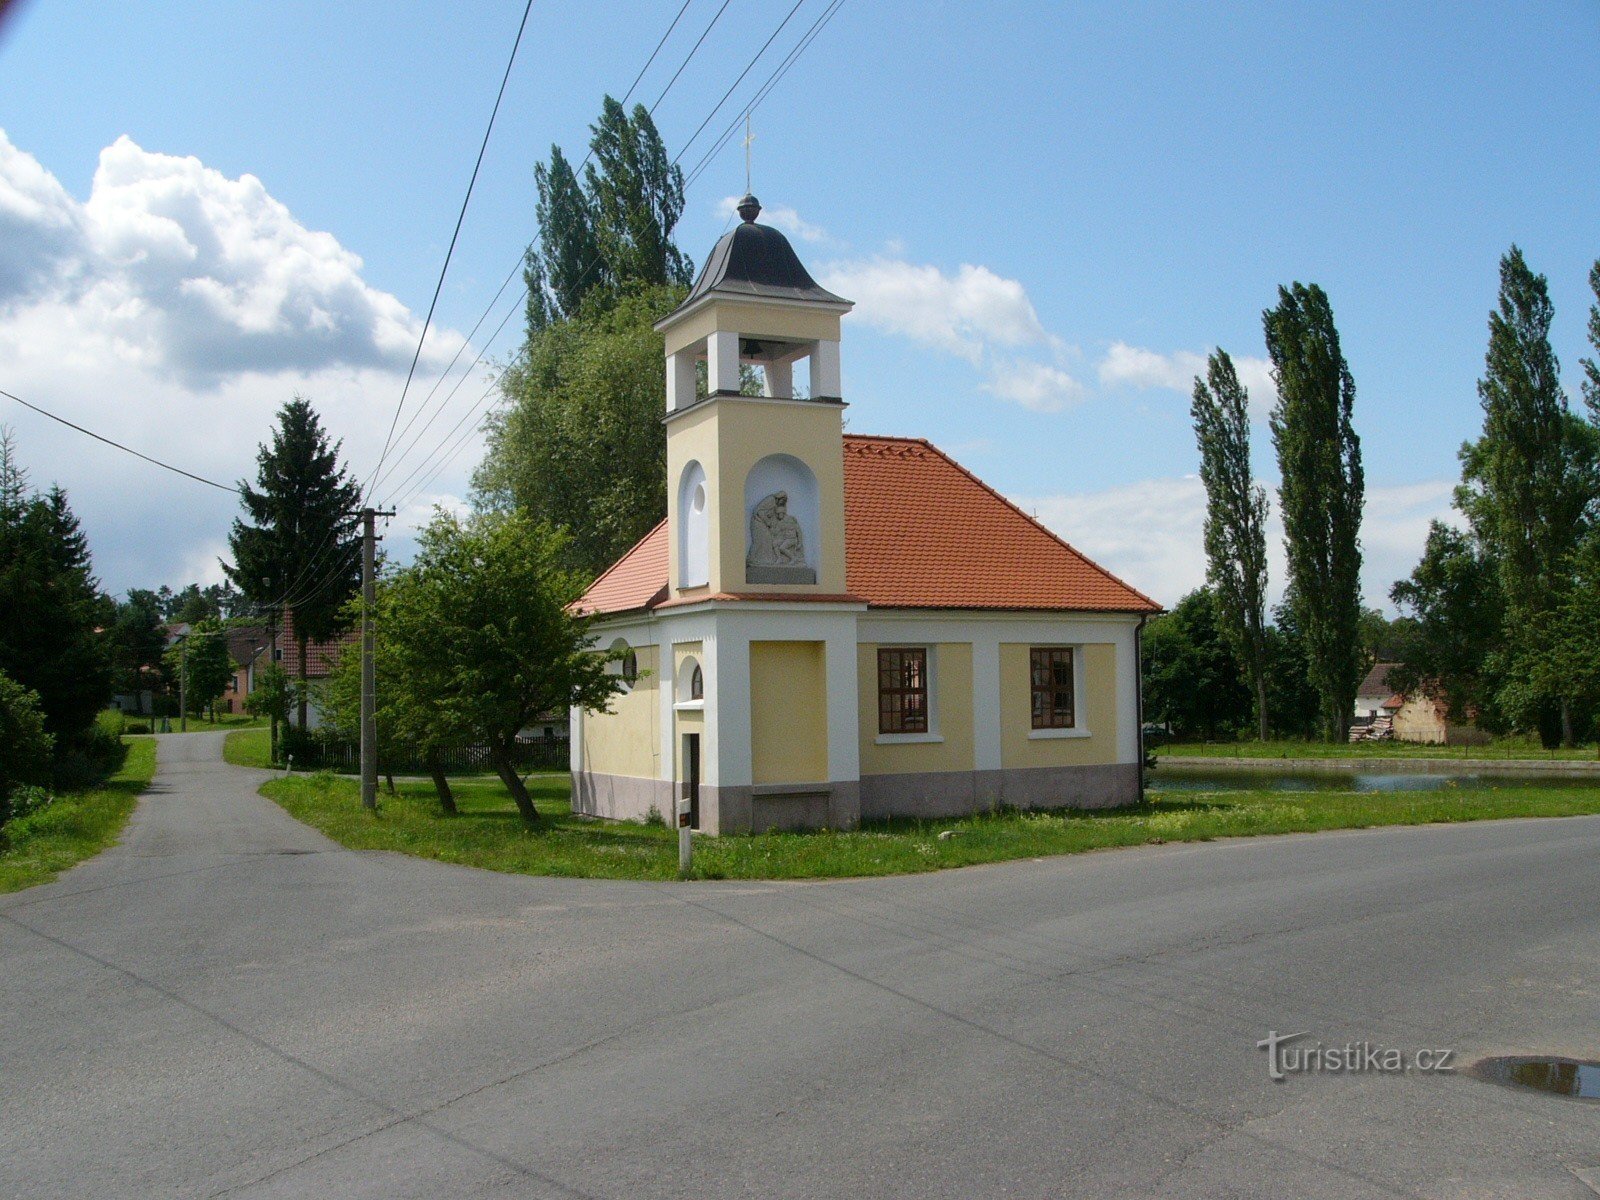 Chapel in Čerňovice